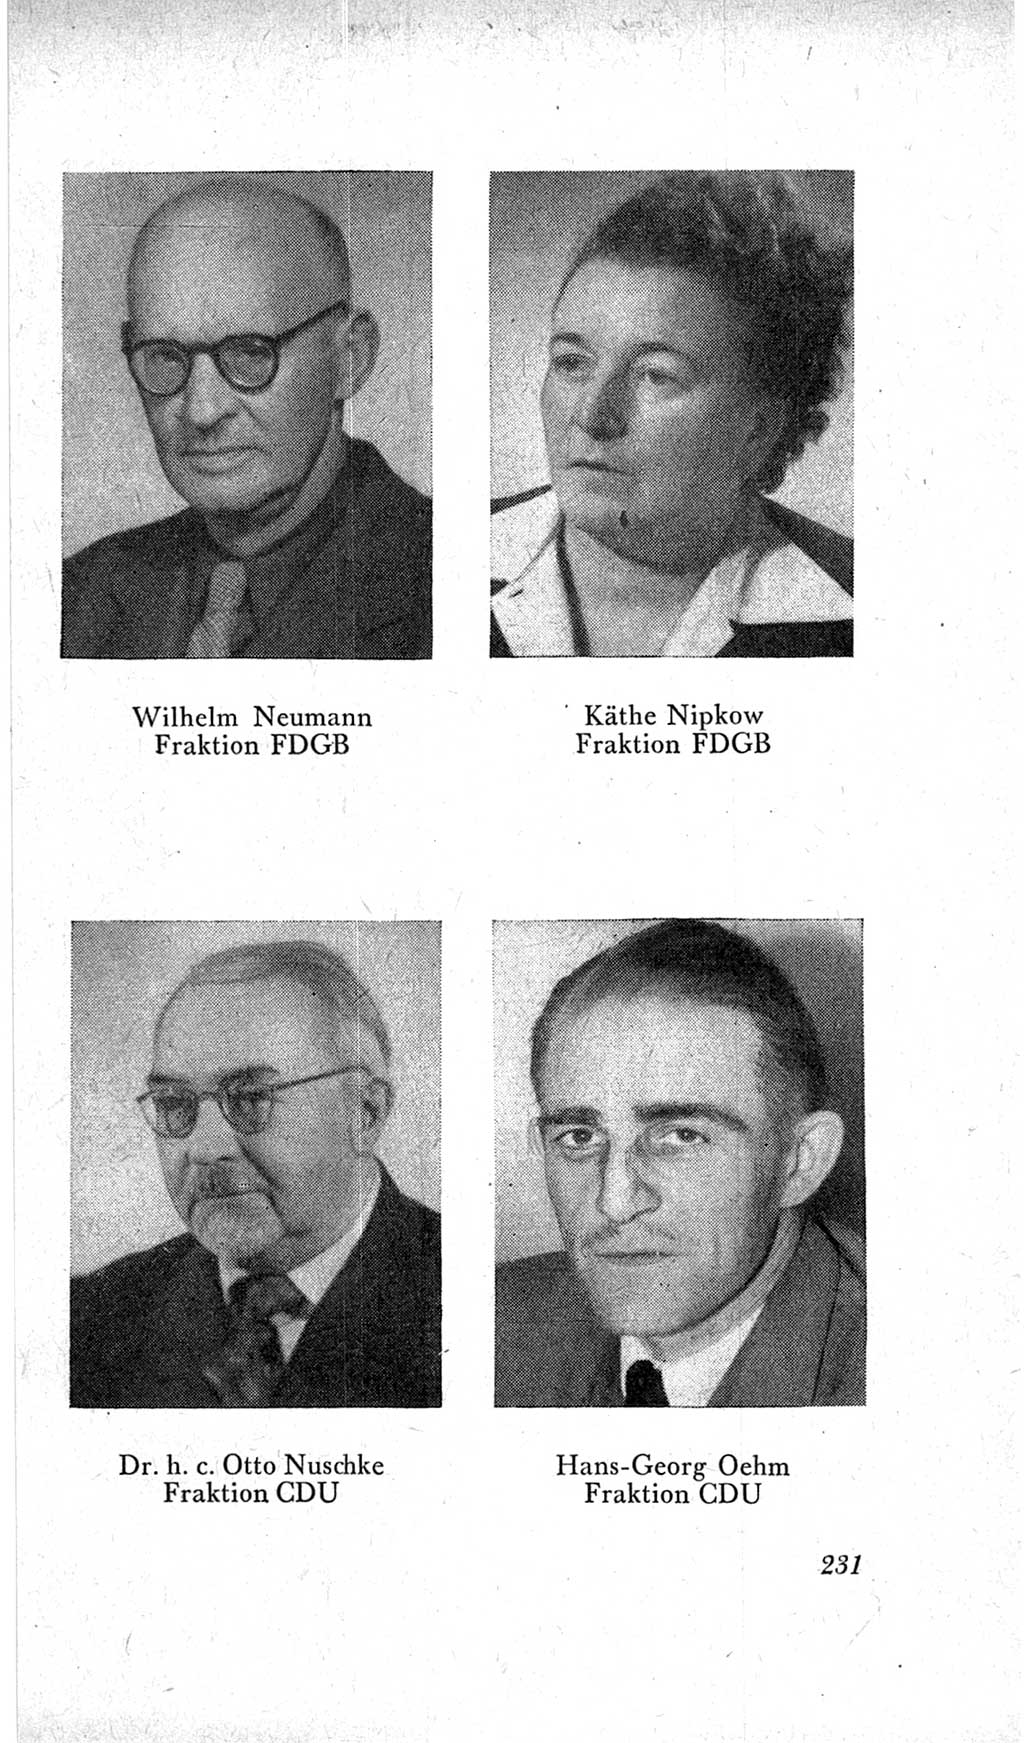 Handbuch der Volkskammer (VK) der Deutschen Demokratischen Republik (DDR), 2. Wahlperiode 1954-1958, Seite 231 (Hdb. VK. DDR, 2. WP. 1954-1958, S. 231)